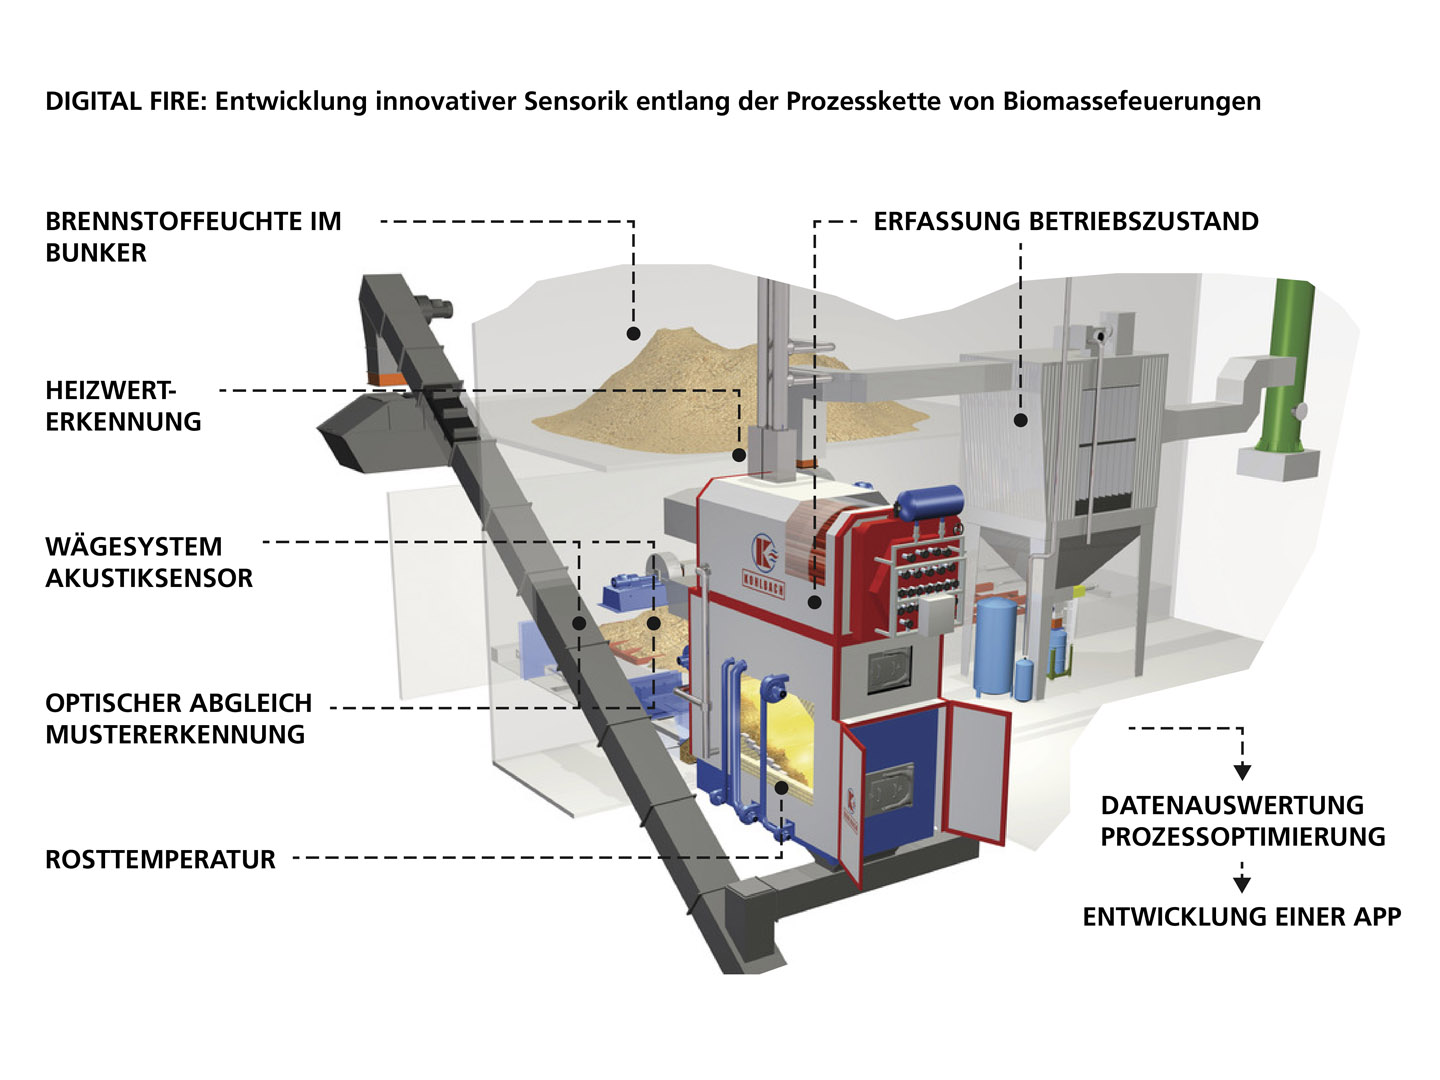 DigitalFire: Entwicklung innovativer Sensorik entlang der Prozesskette von Biomassefeuerungen. 